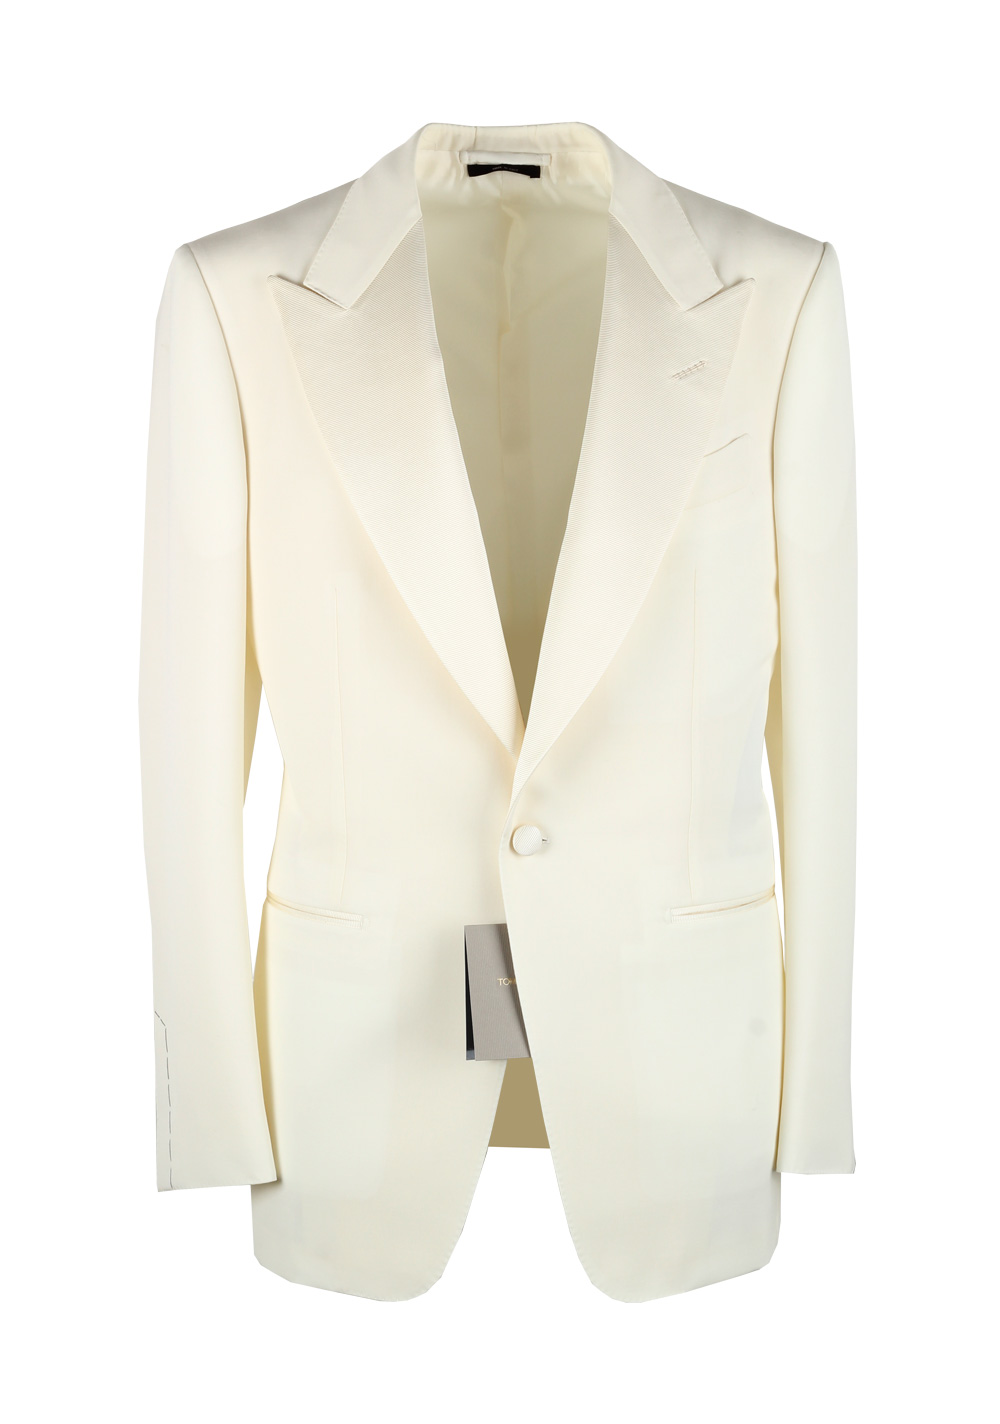 TOM FORD Windsor Ivory Signature Tuxedo Dinner Jacket Size 54 / 44R U.S ...